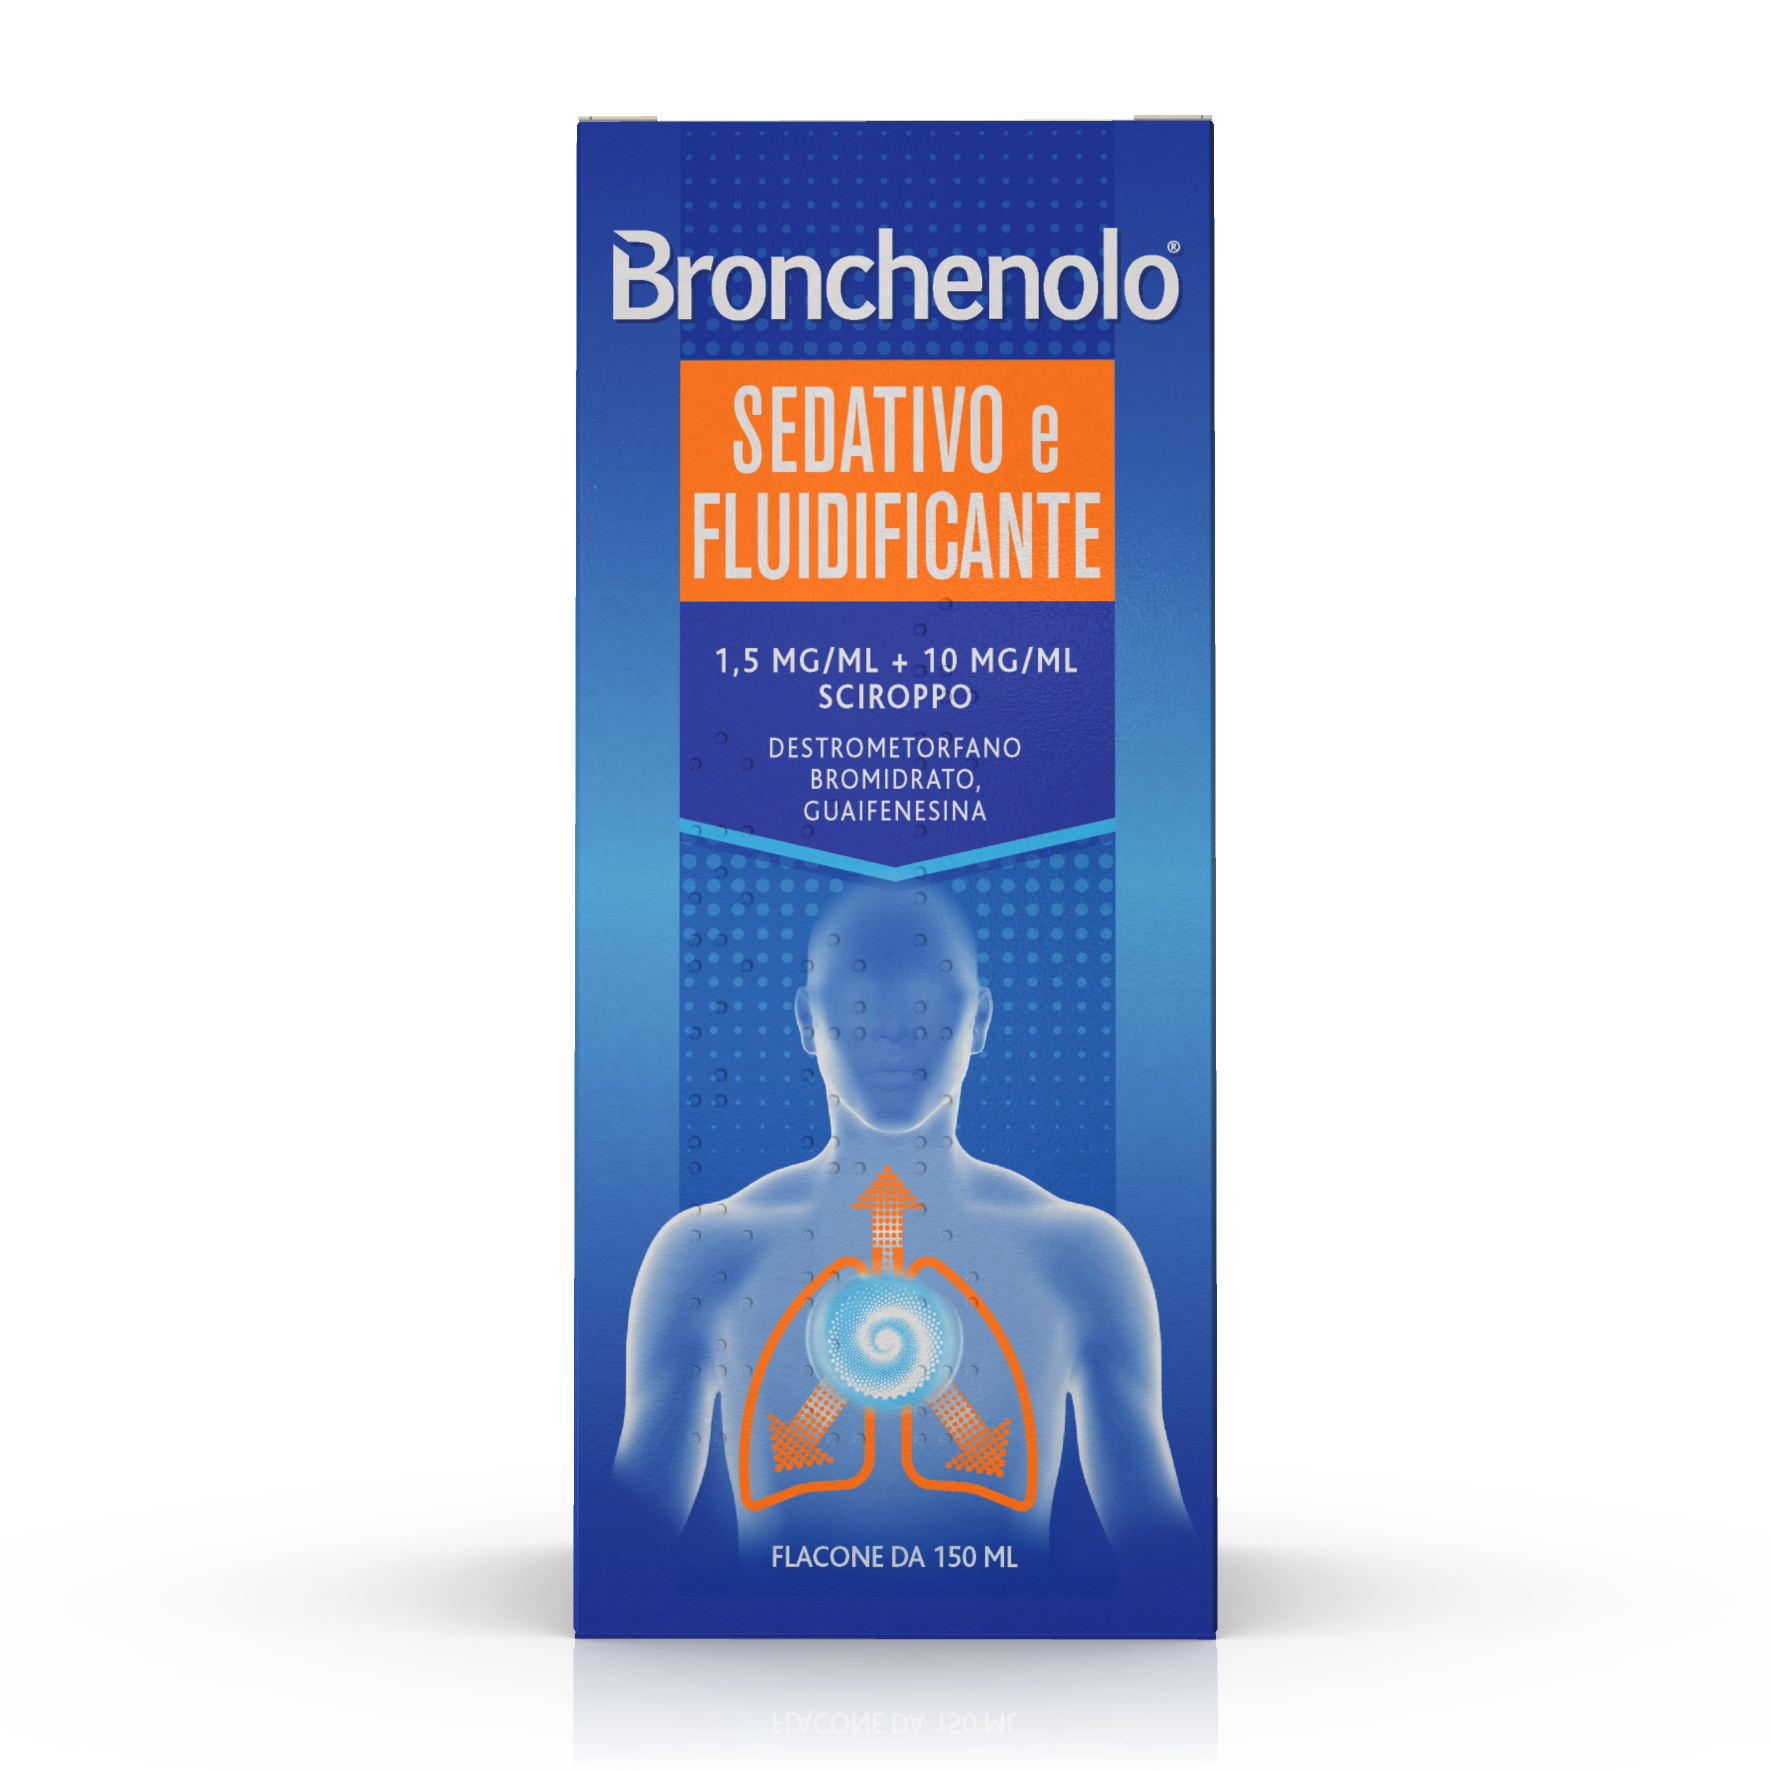 Bronchenolo Sed Flui*scir150ml - bronchenolo sedativo e fluidificante 150ml